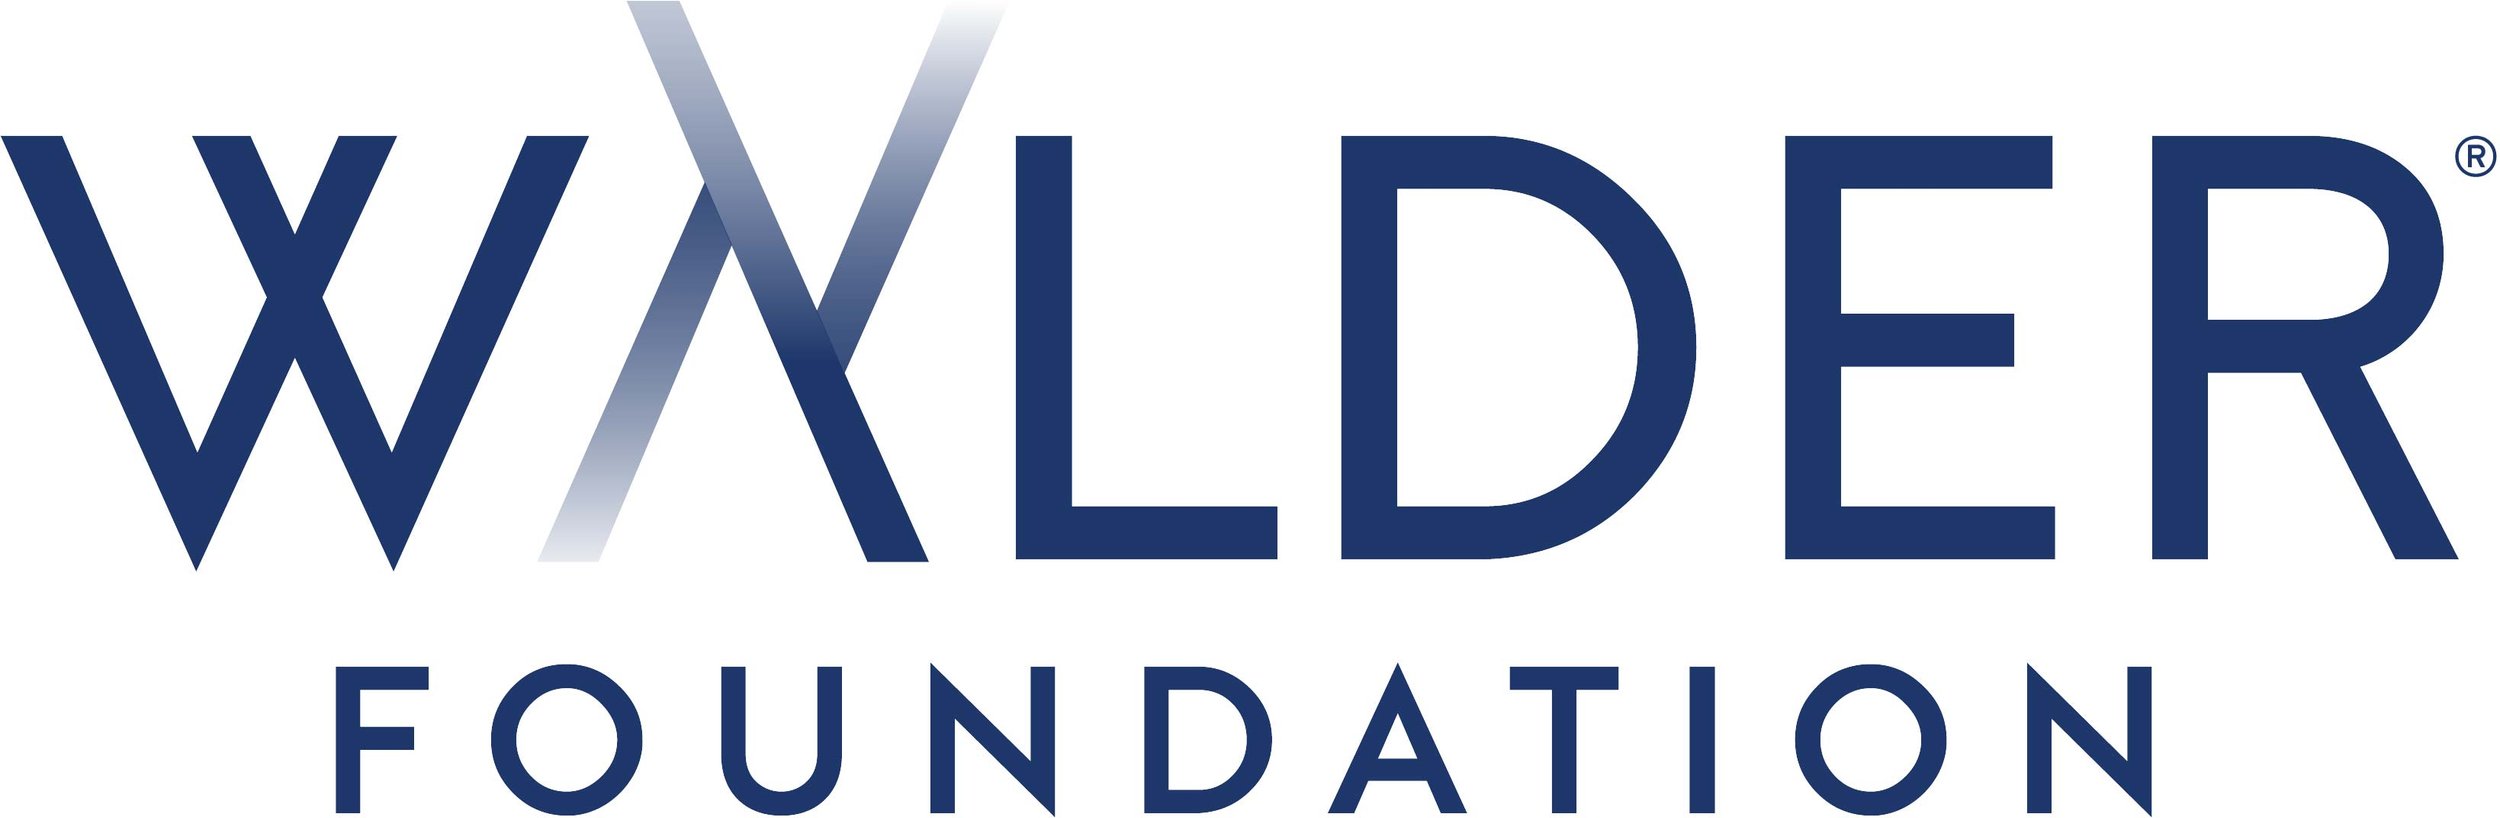 Walder foundation logo.